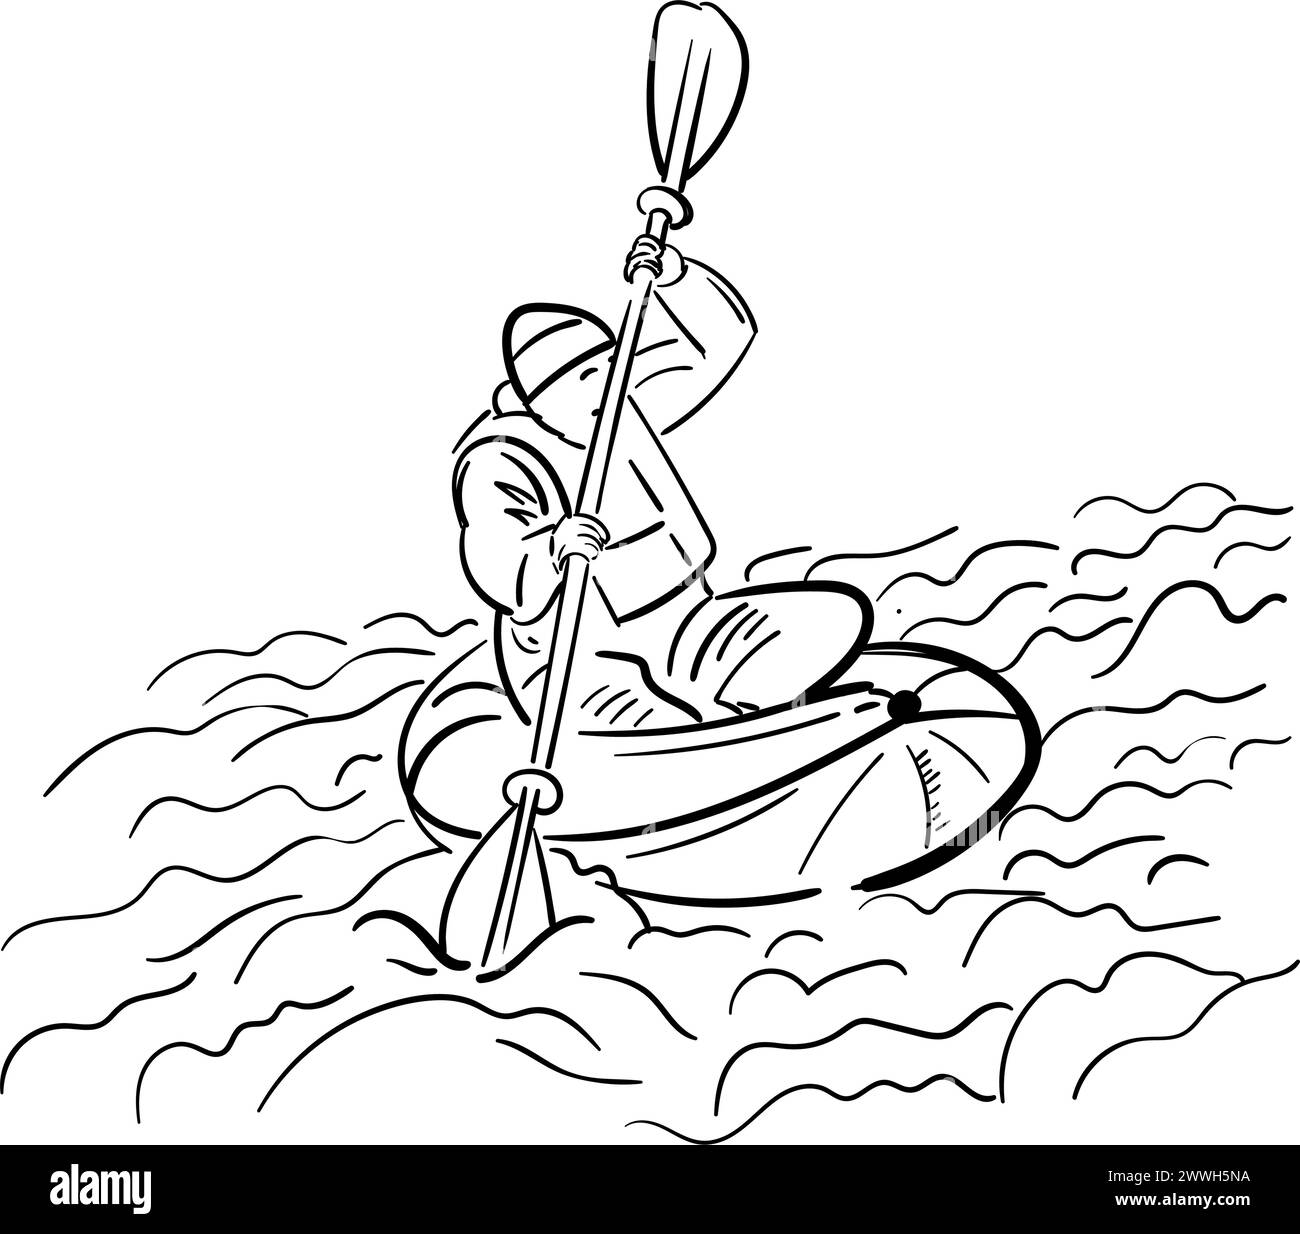 Croquis de gens de kayak sur la rivière, lac , homme , femme. Vue de face, illustration vectorielle dessinée à la main isolée. Doodle Sketch sport. Illustration de Vecteur